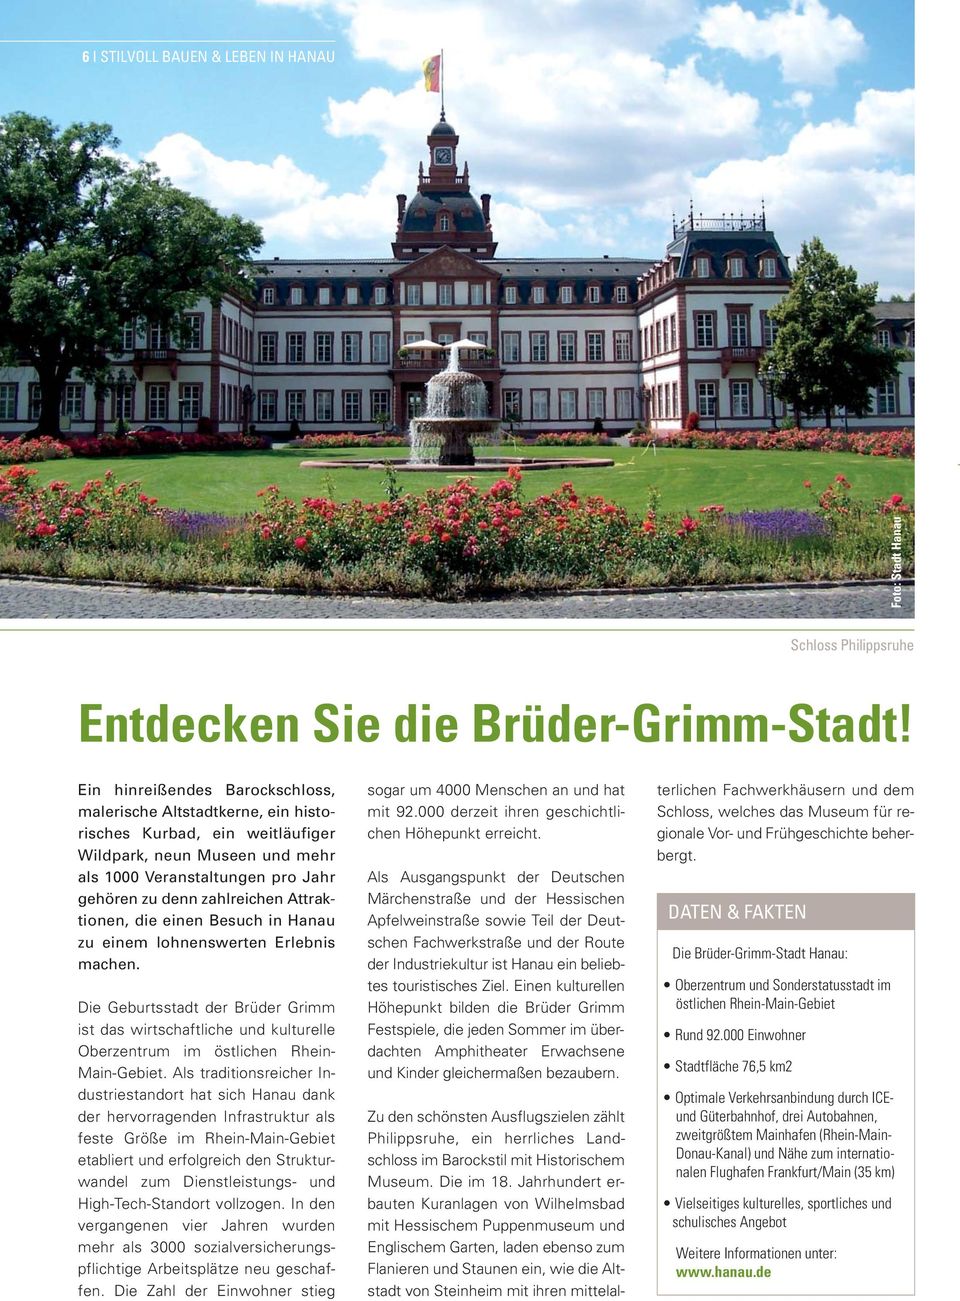 Attraktionen, die einen Besuch in Hanau zu einem lohnenswerten Erlebnis machen. Die Geburtsstadt der Brüder Grimm ist das wirtschaftliche und kulturelle Oberzentrum im östlichen Rhein- Main-Gebiet.